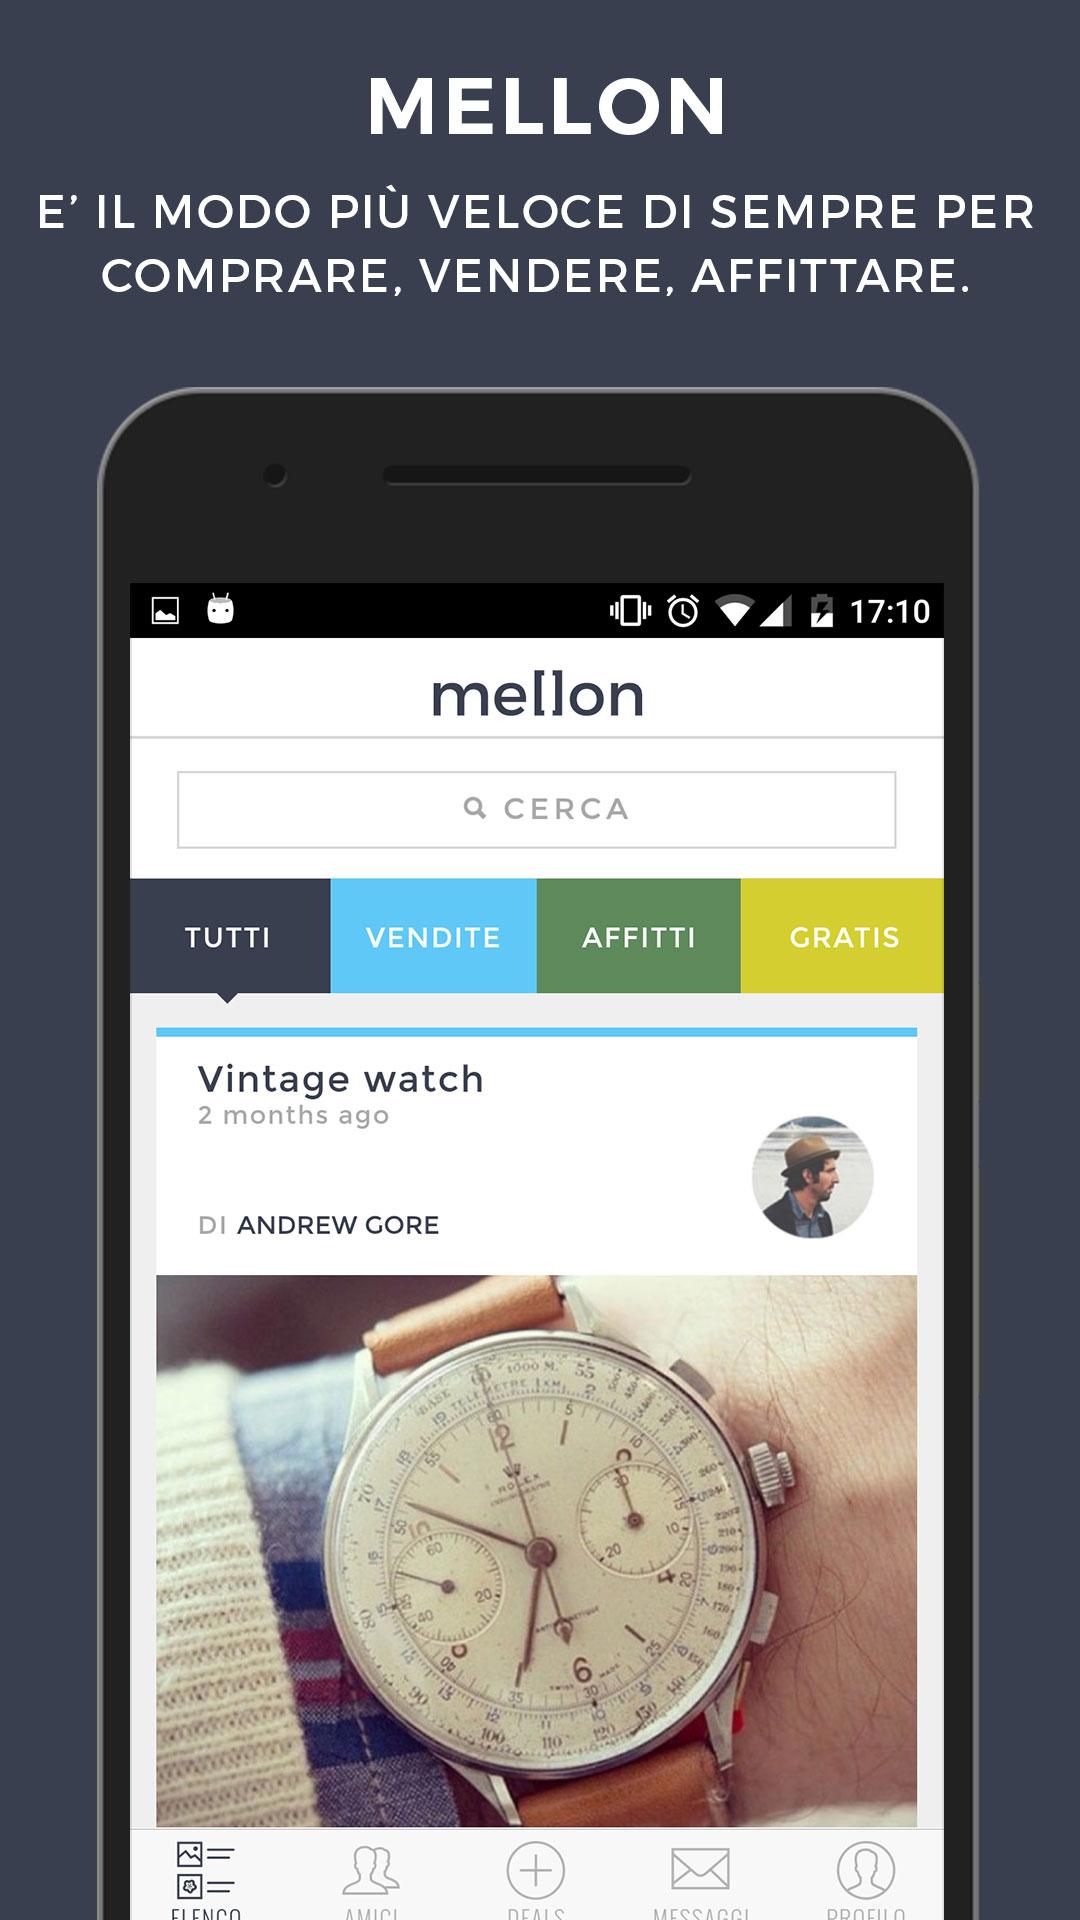 Android application Mellon - Deals Among Friends screenshort